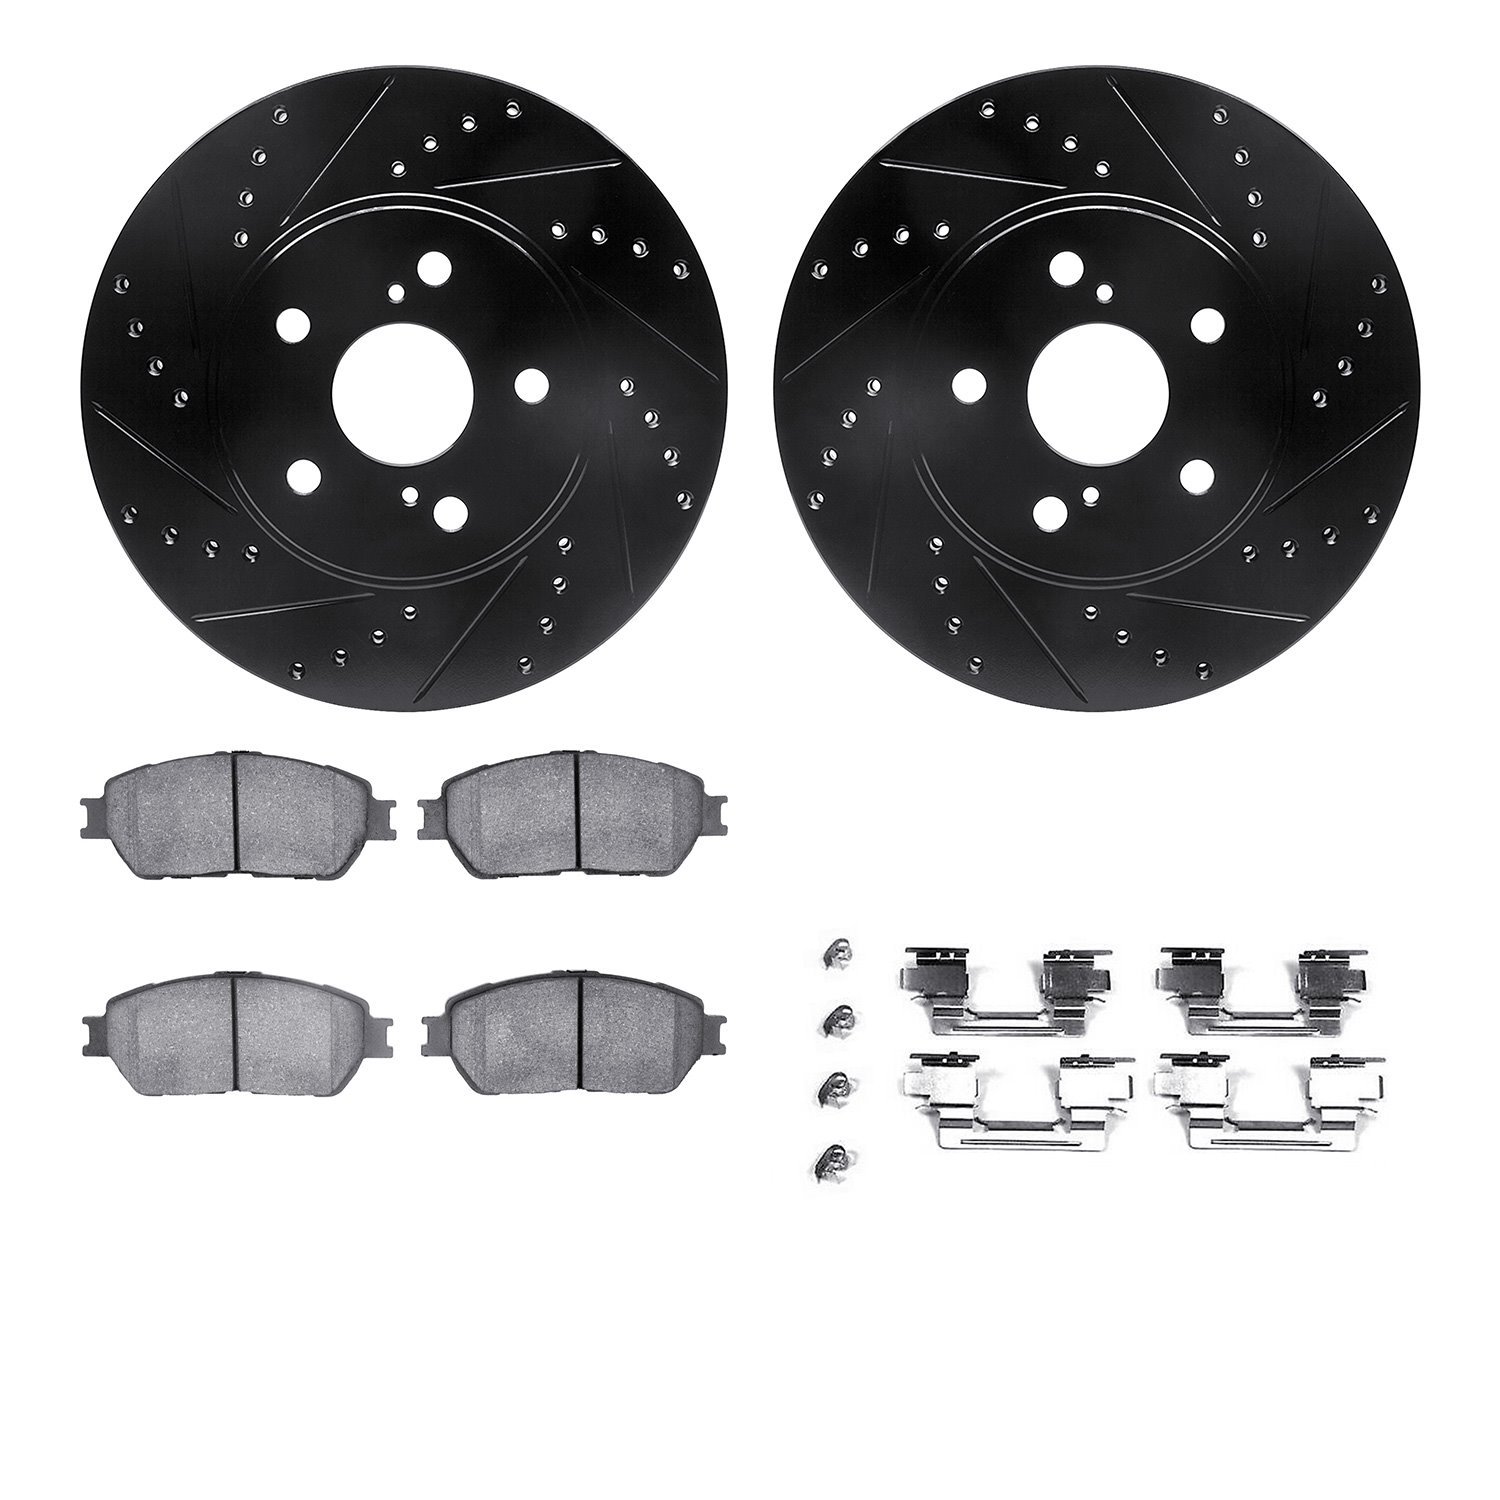 8312-76136 Drilled/Slotted Brake Rotors with 3000-Series Ceramic Brake Pads Kit & Hardware [Black], 2002-2006 Lexus/Toyota/Scion